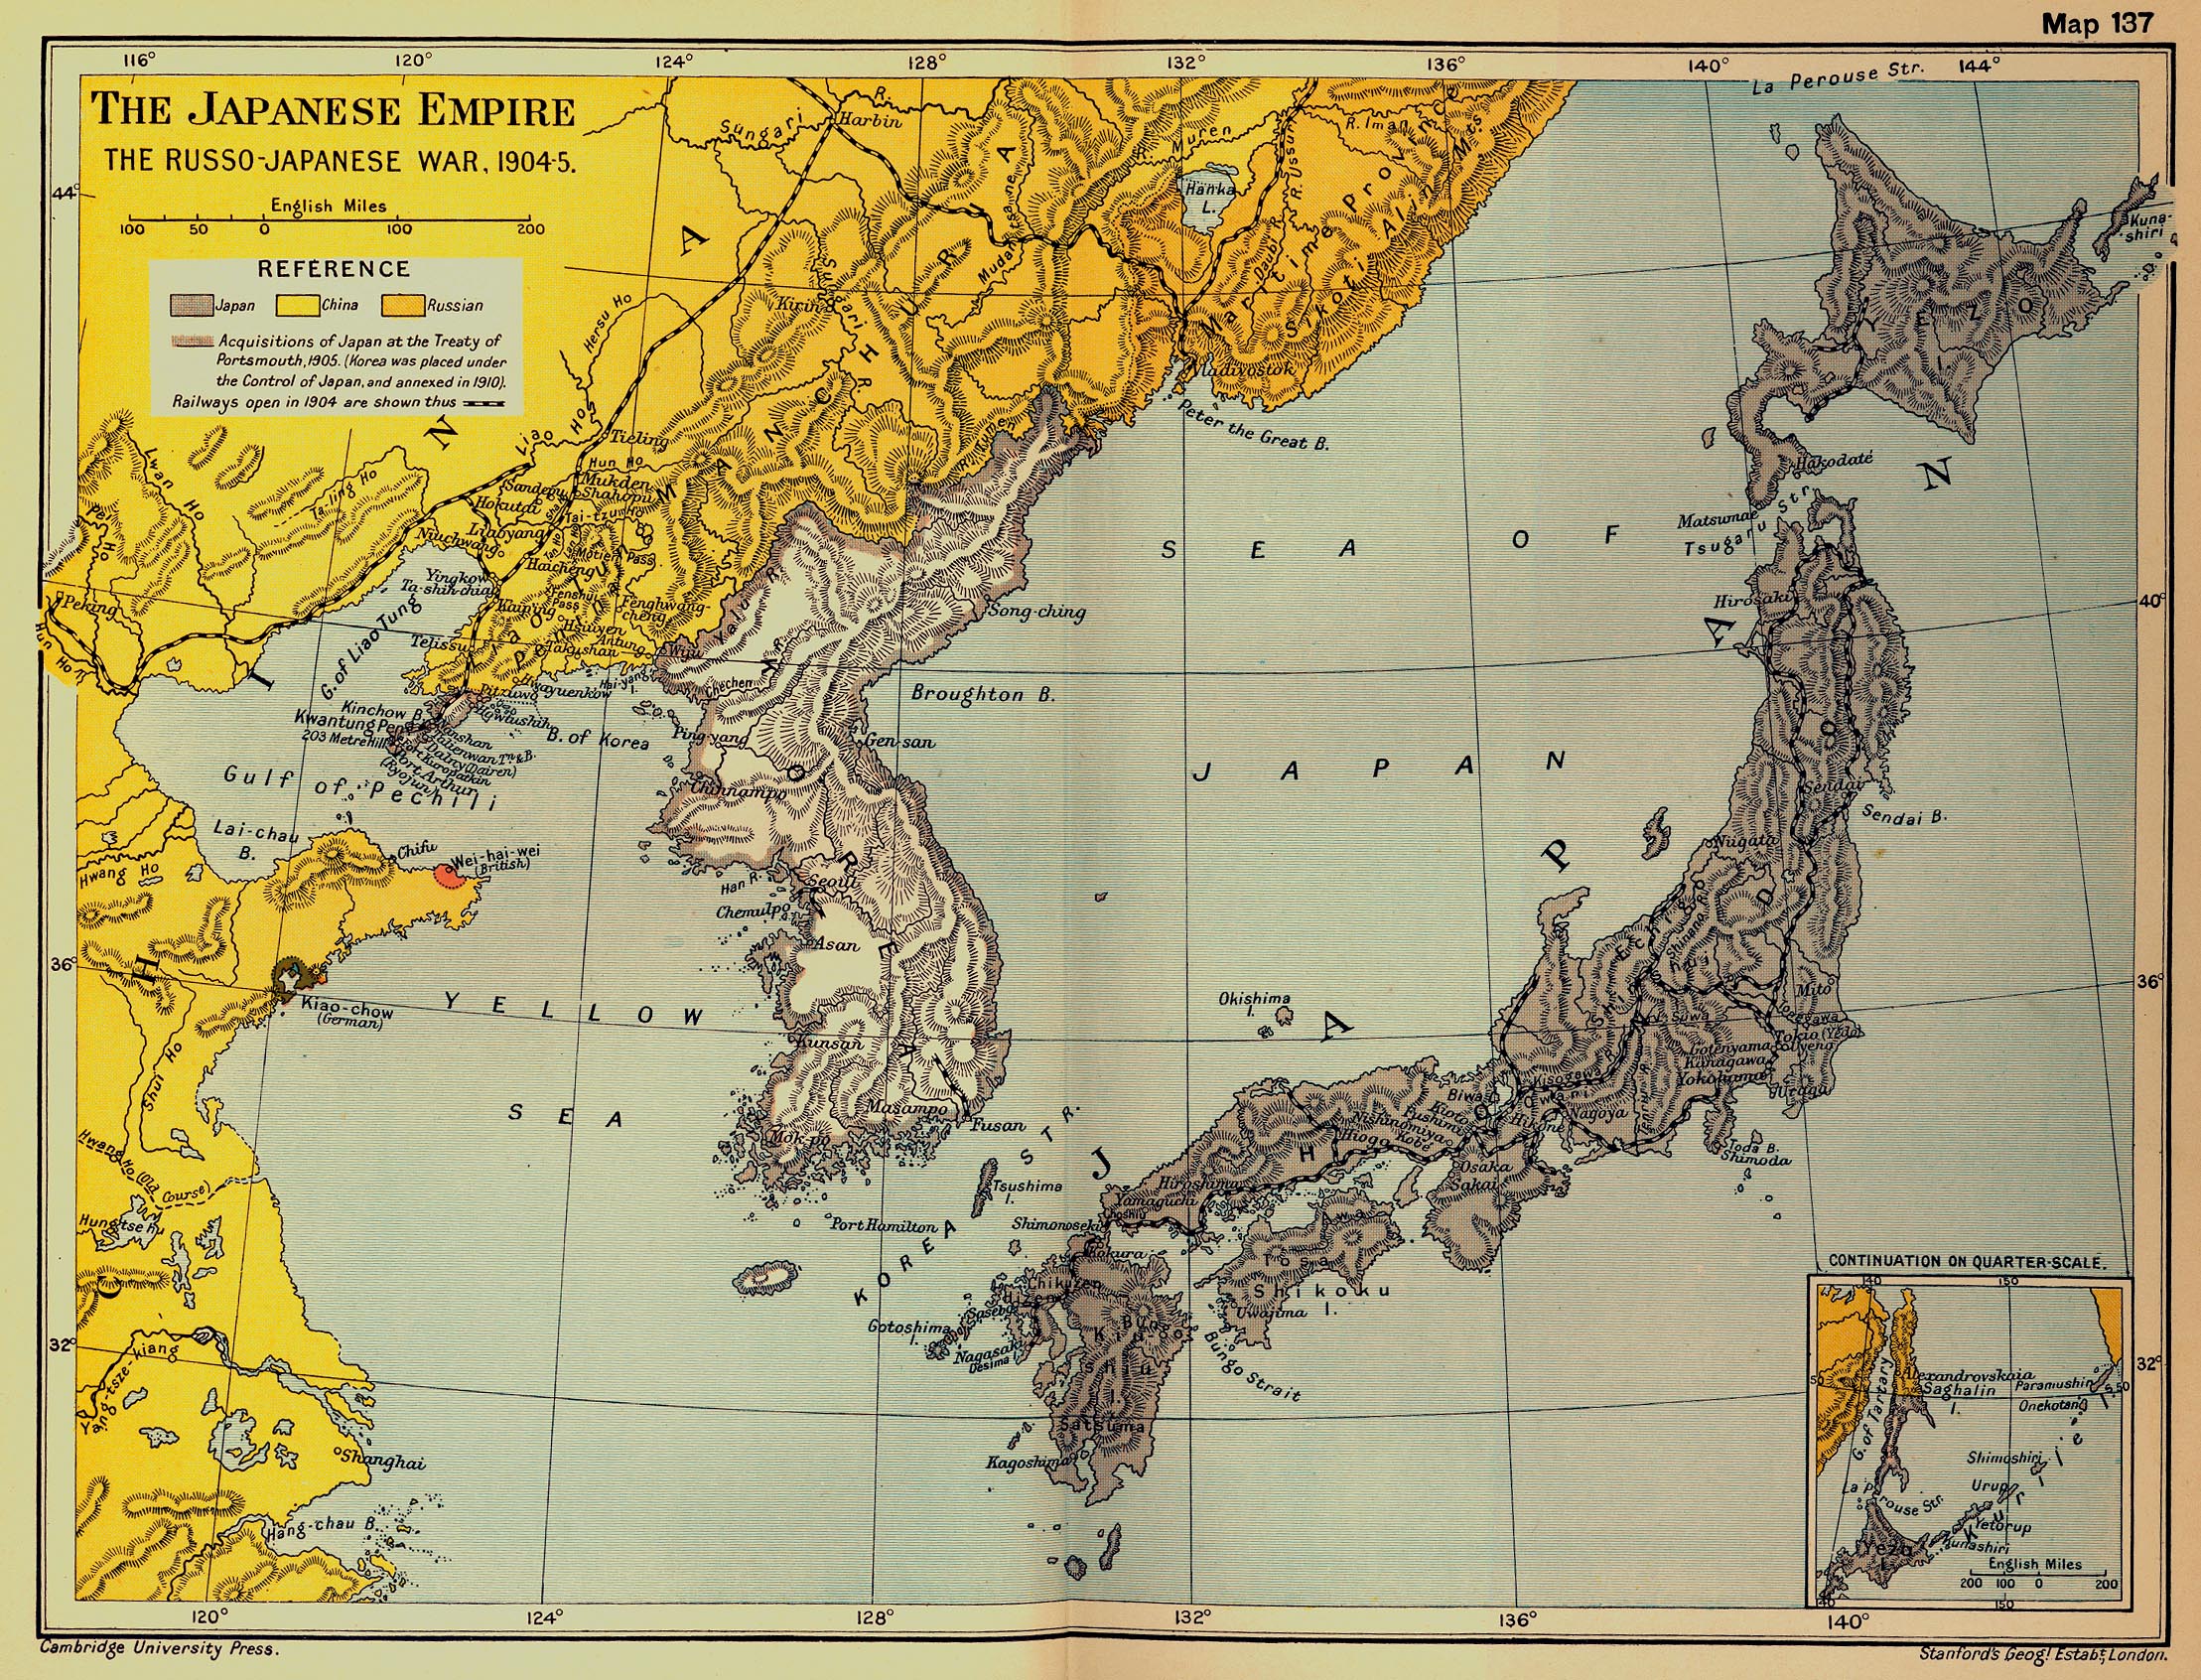 Карта понятна без перевода - железная дорога, европейские колонии, словом, у японцев были поводу к беспокойству